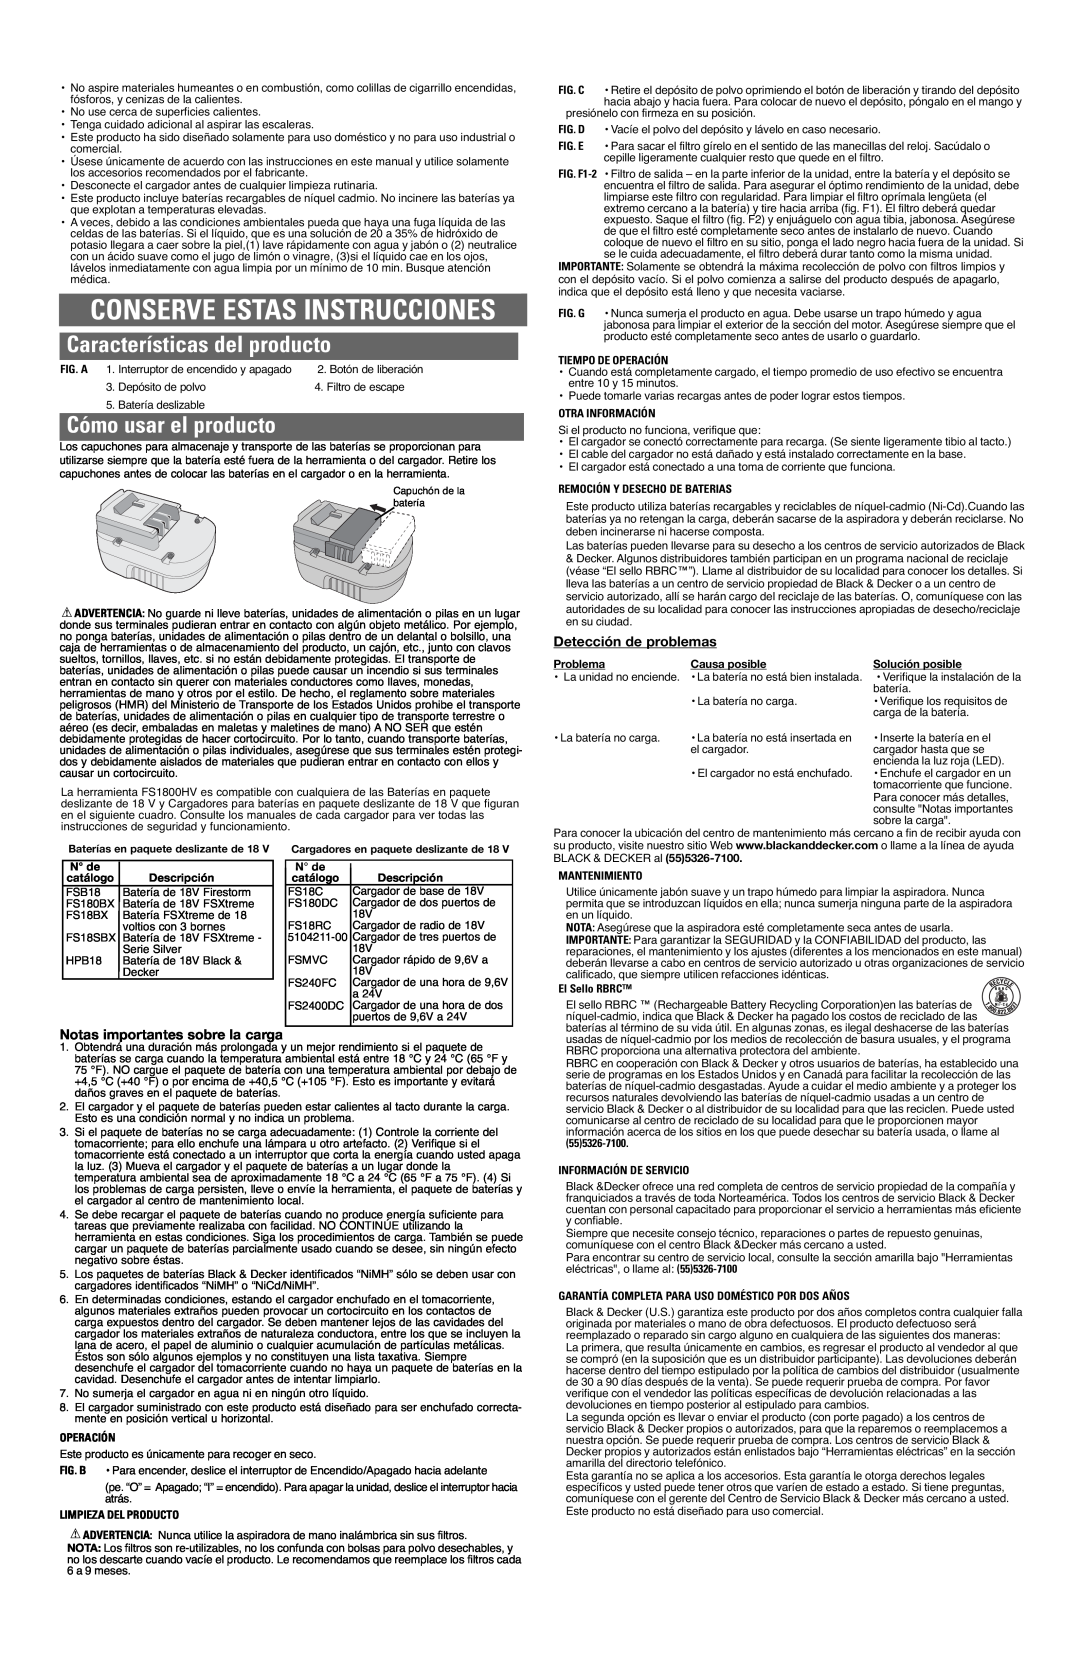 Black & Decker FS1800HV, 5148276-00 Características del producto, Cómo usar el producto, Detección de problemas 